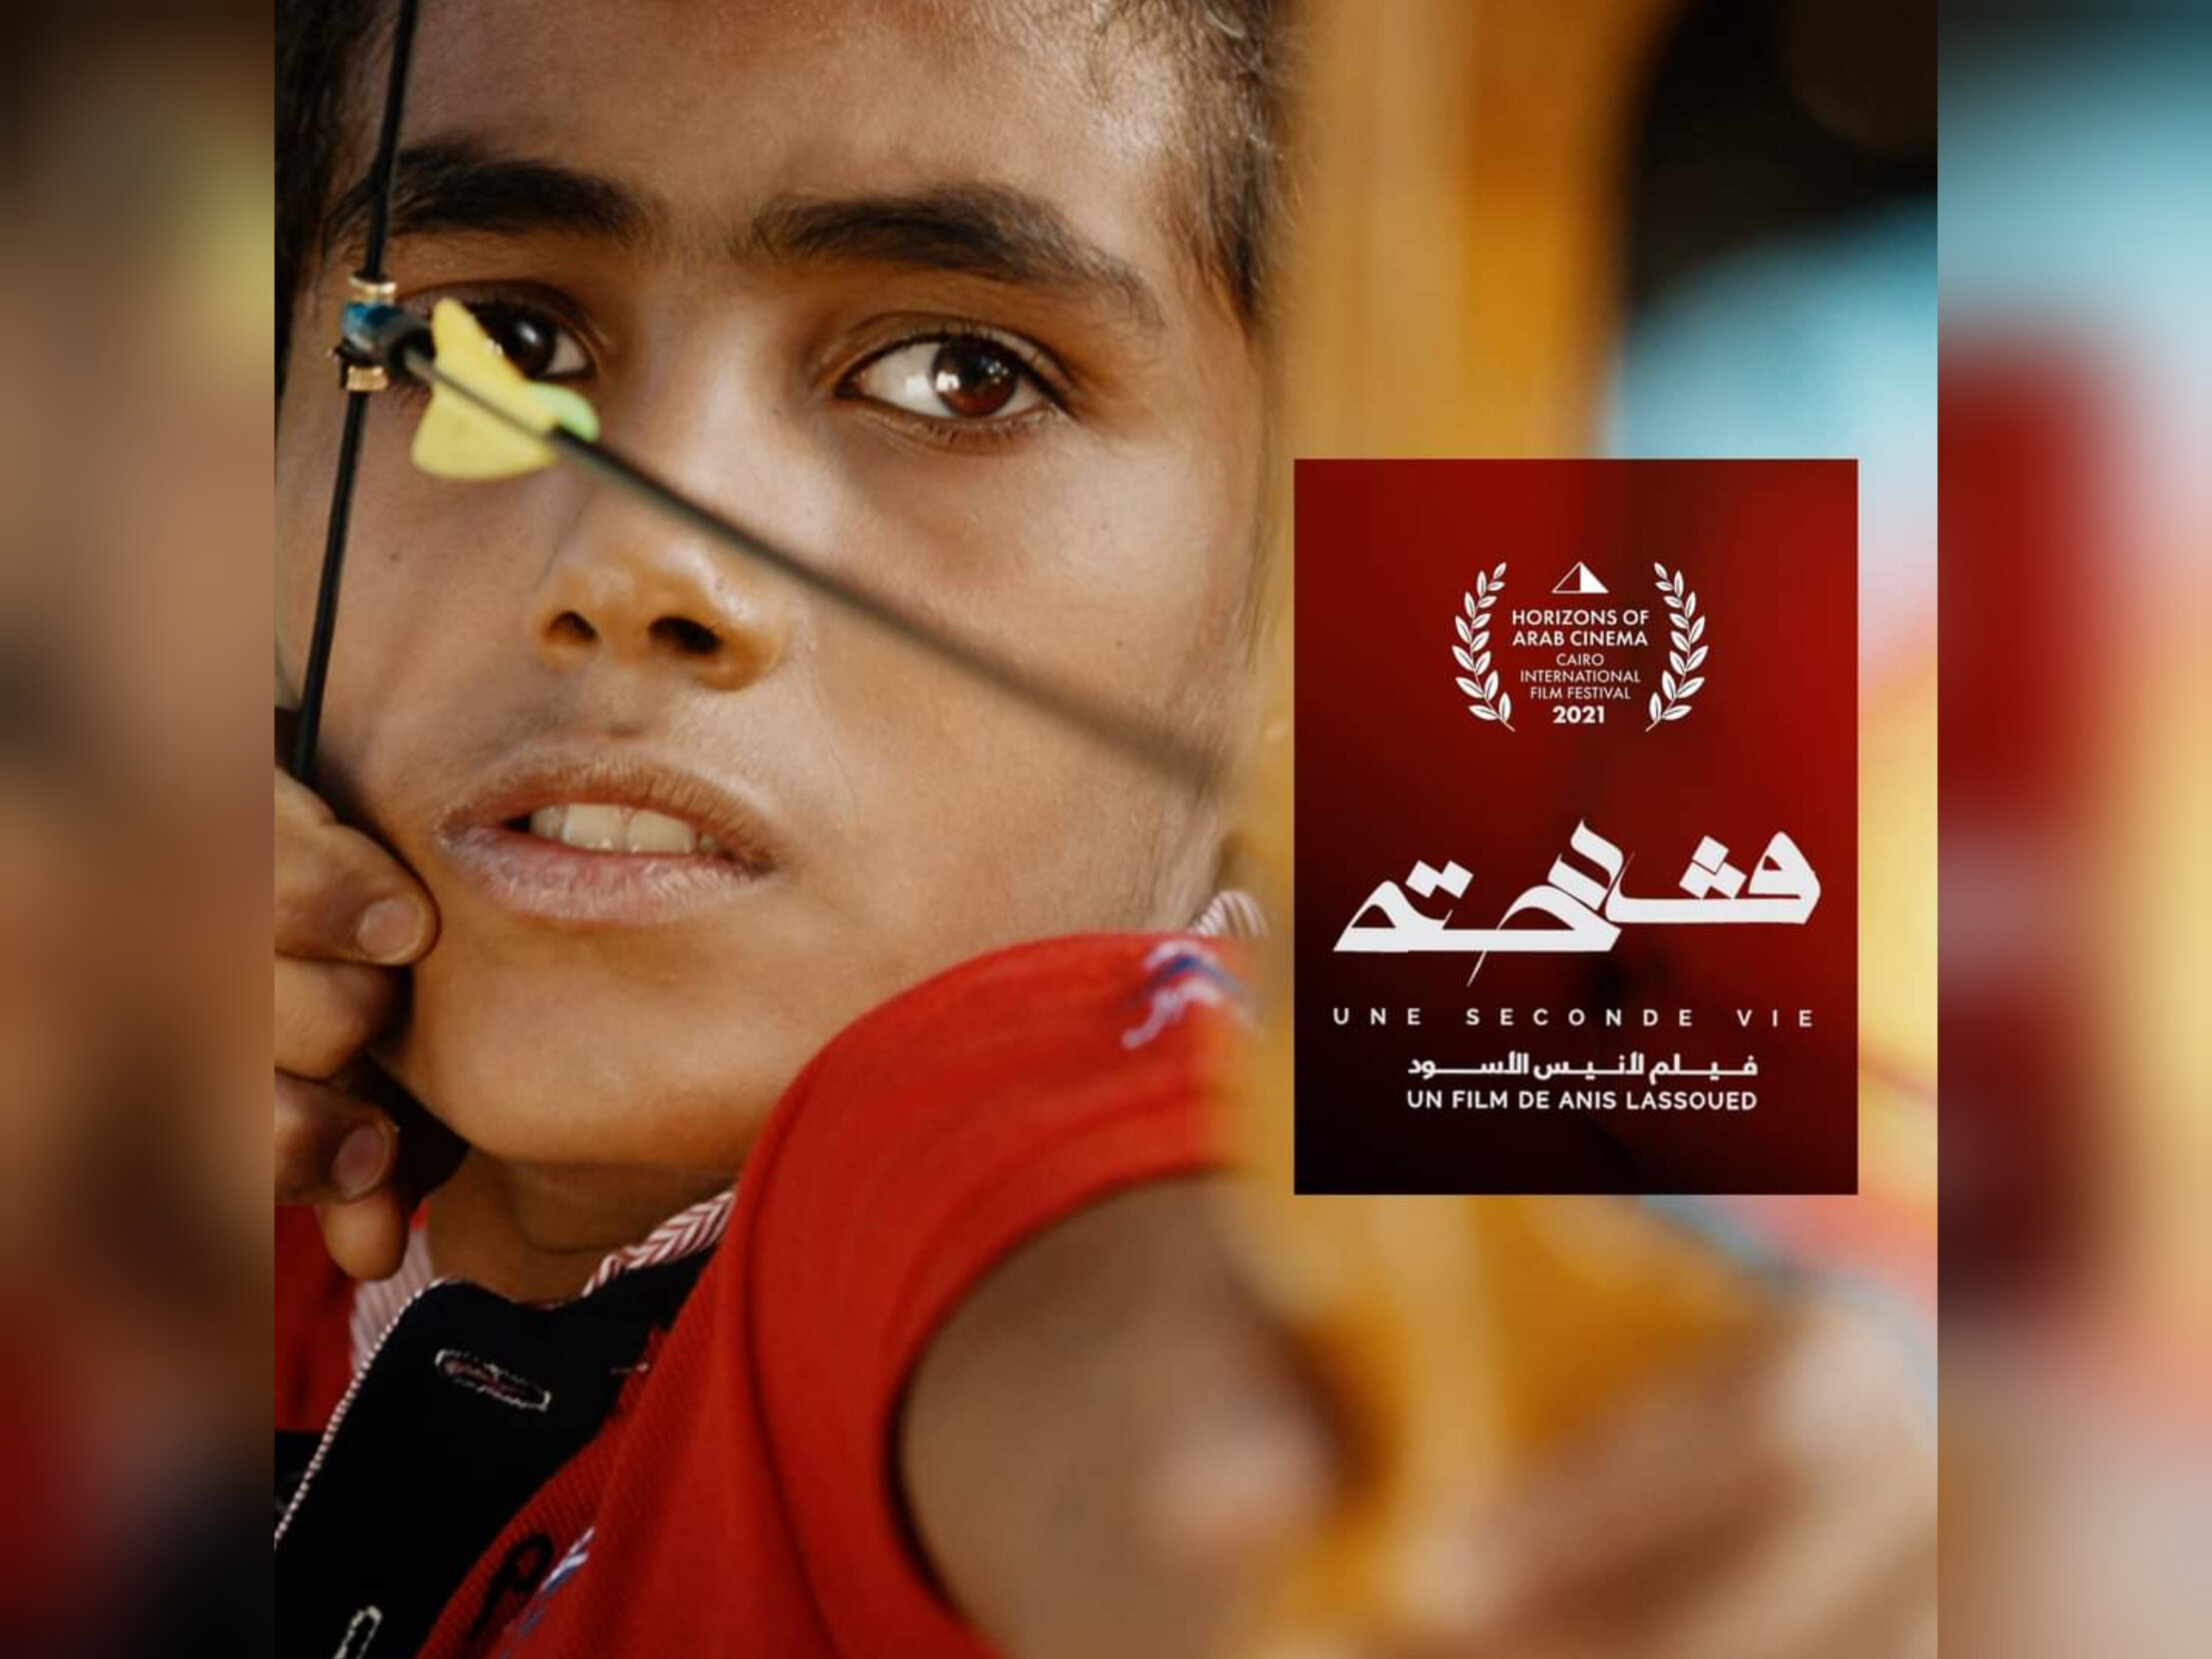   بالفيديو العرض العالمي للفيلم التونسي "قدحة" بالقاهرة السينمائي 